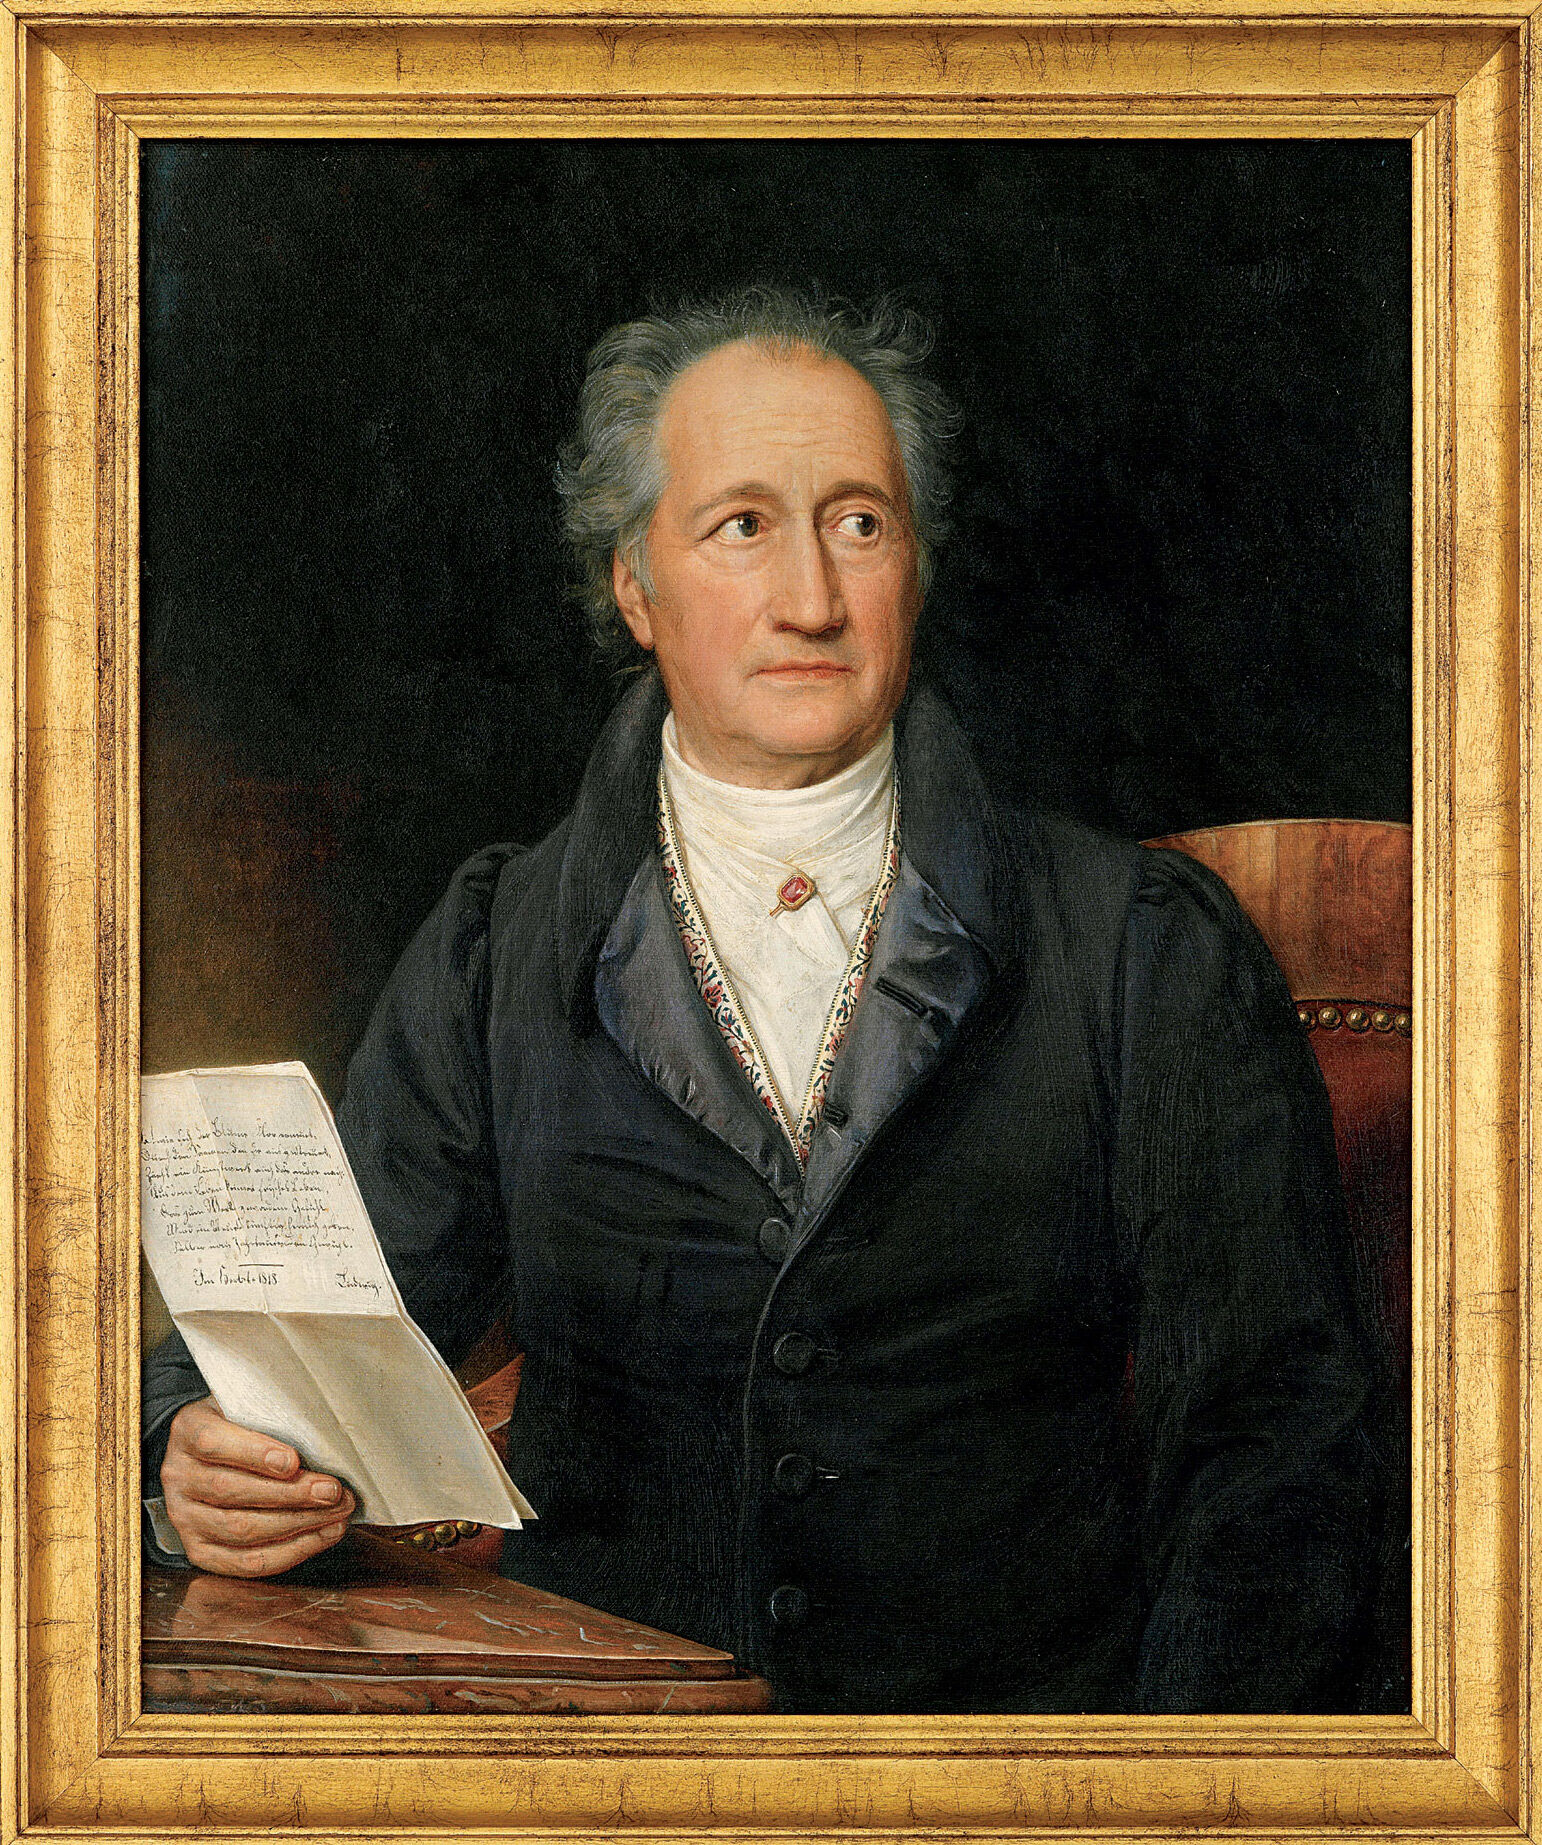 Picture "Goethe" (1828), framed by Joseph Karl Stieler